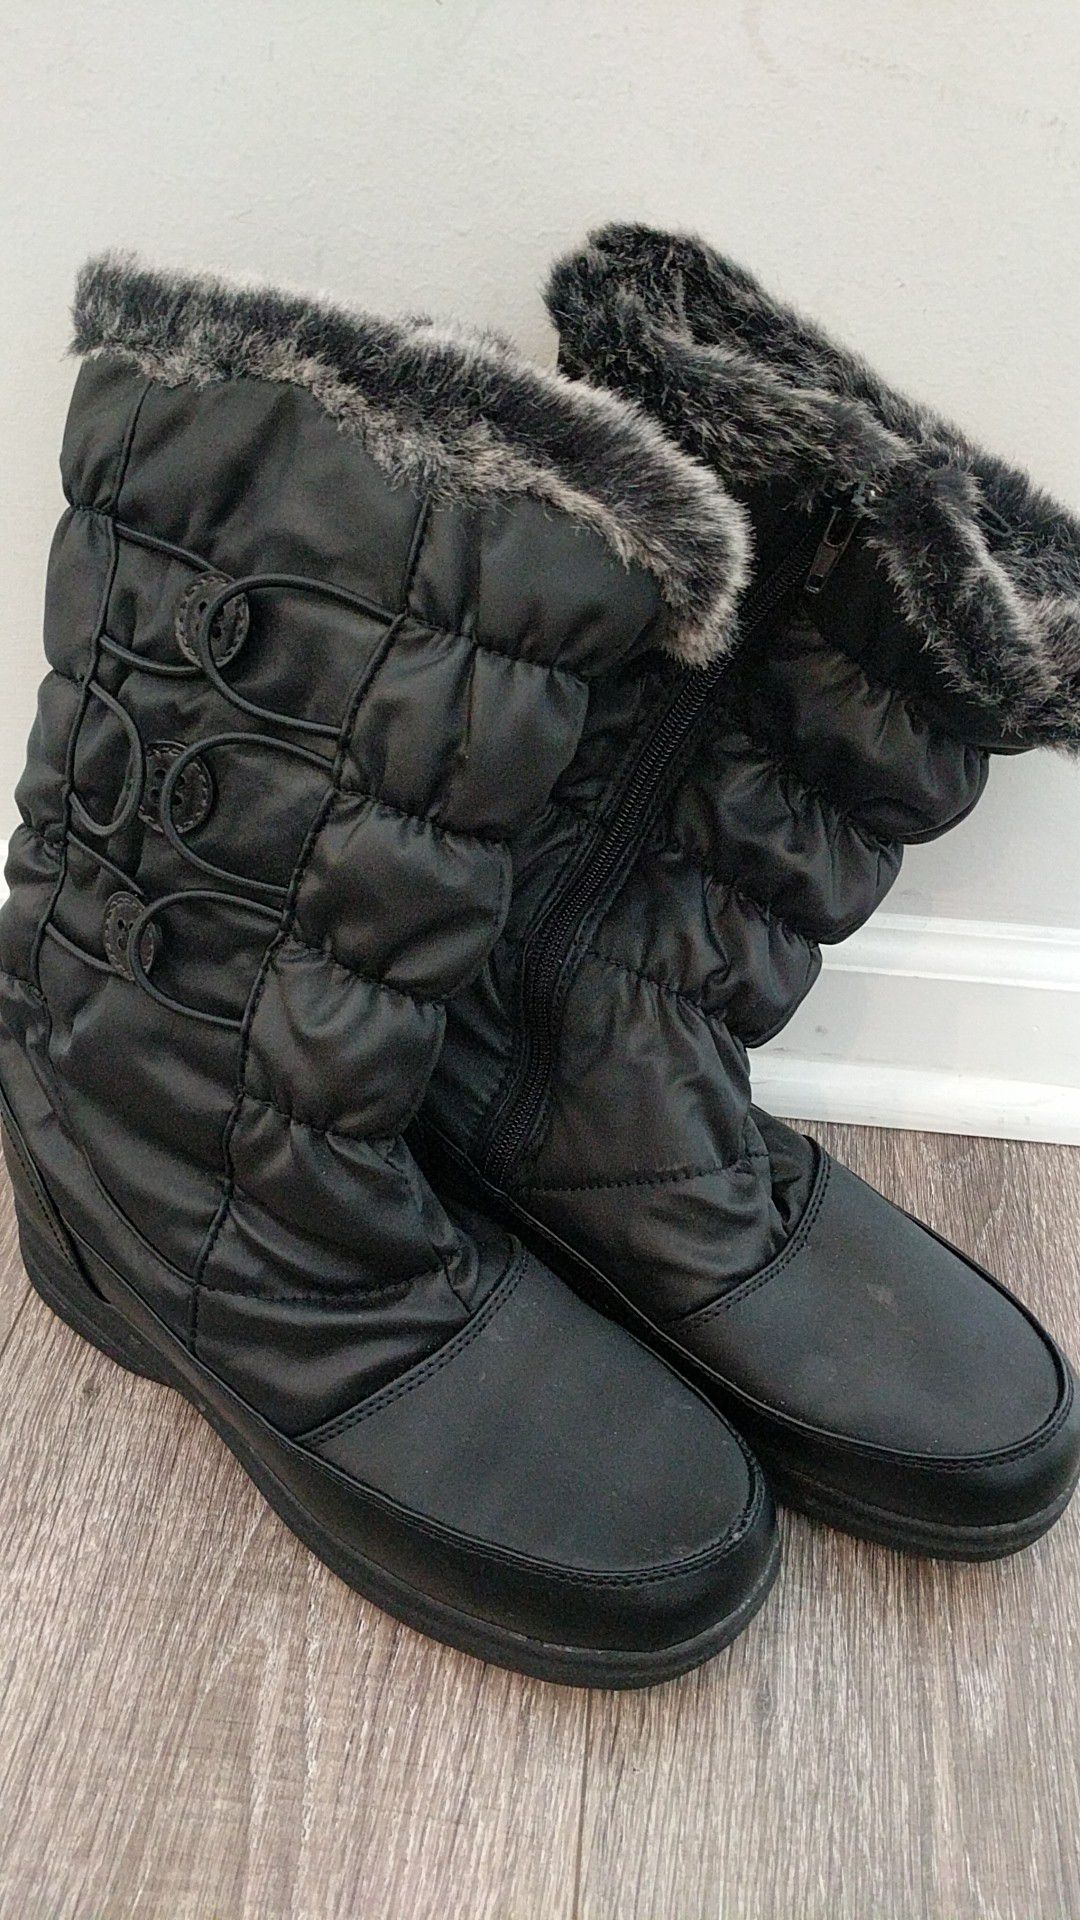 Women's black boots size 8M